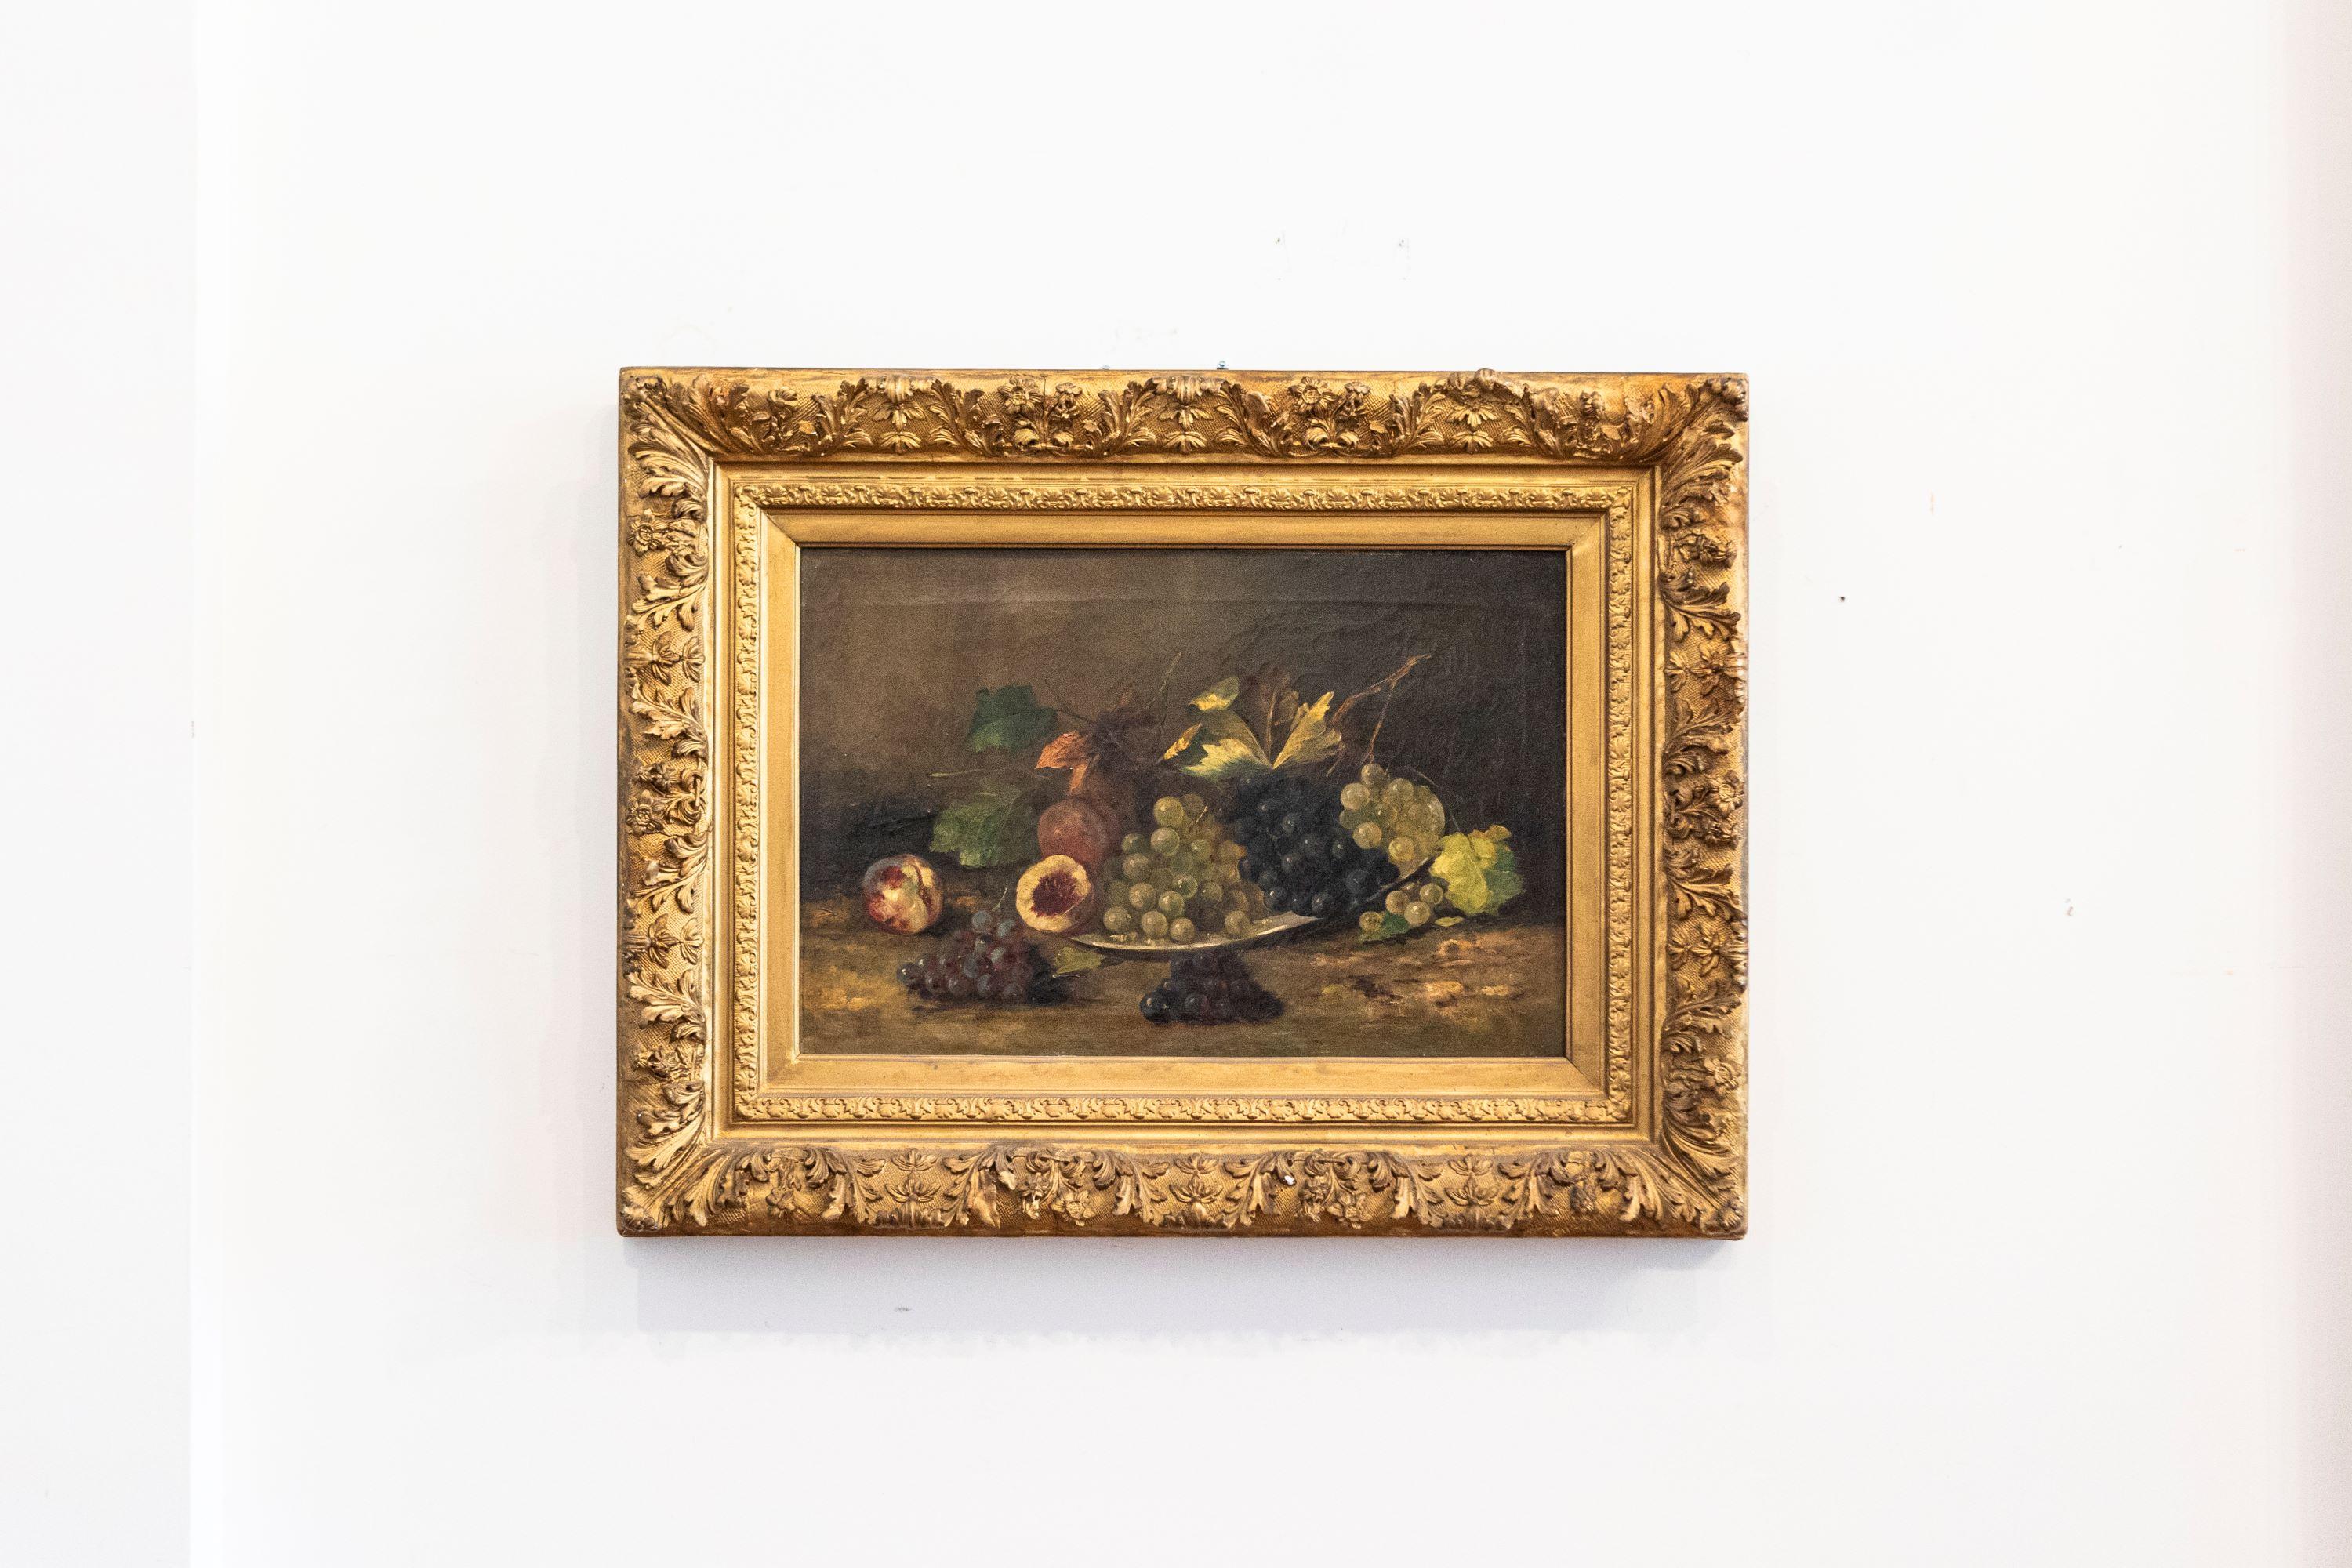 Nature morte sur toile encadrée en bois doré, datant du XIXe siècle, représentant une coupe de fruits. Née en France au XIXe siècle, cette nature morte horizontale à l'huile sur toile représente une délicate composition de fruits appétissants se